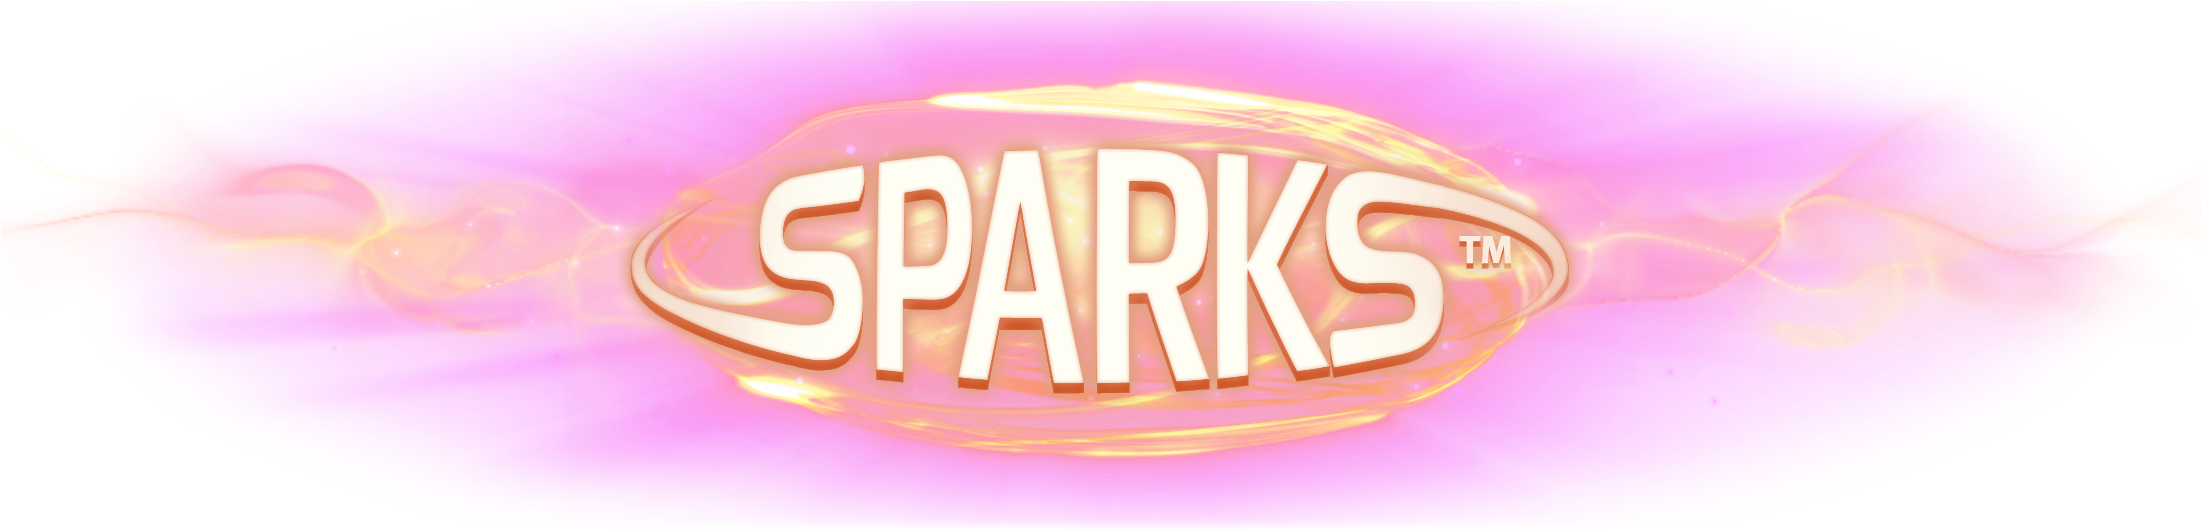 Vibrant Sparks Logo PNG image